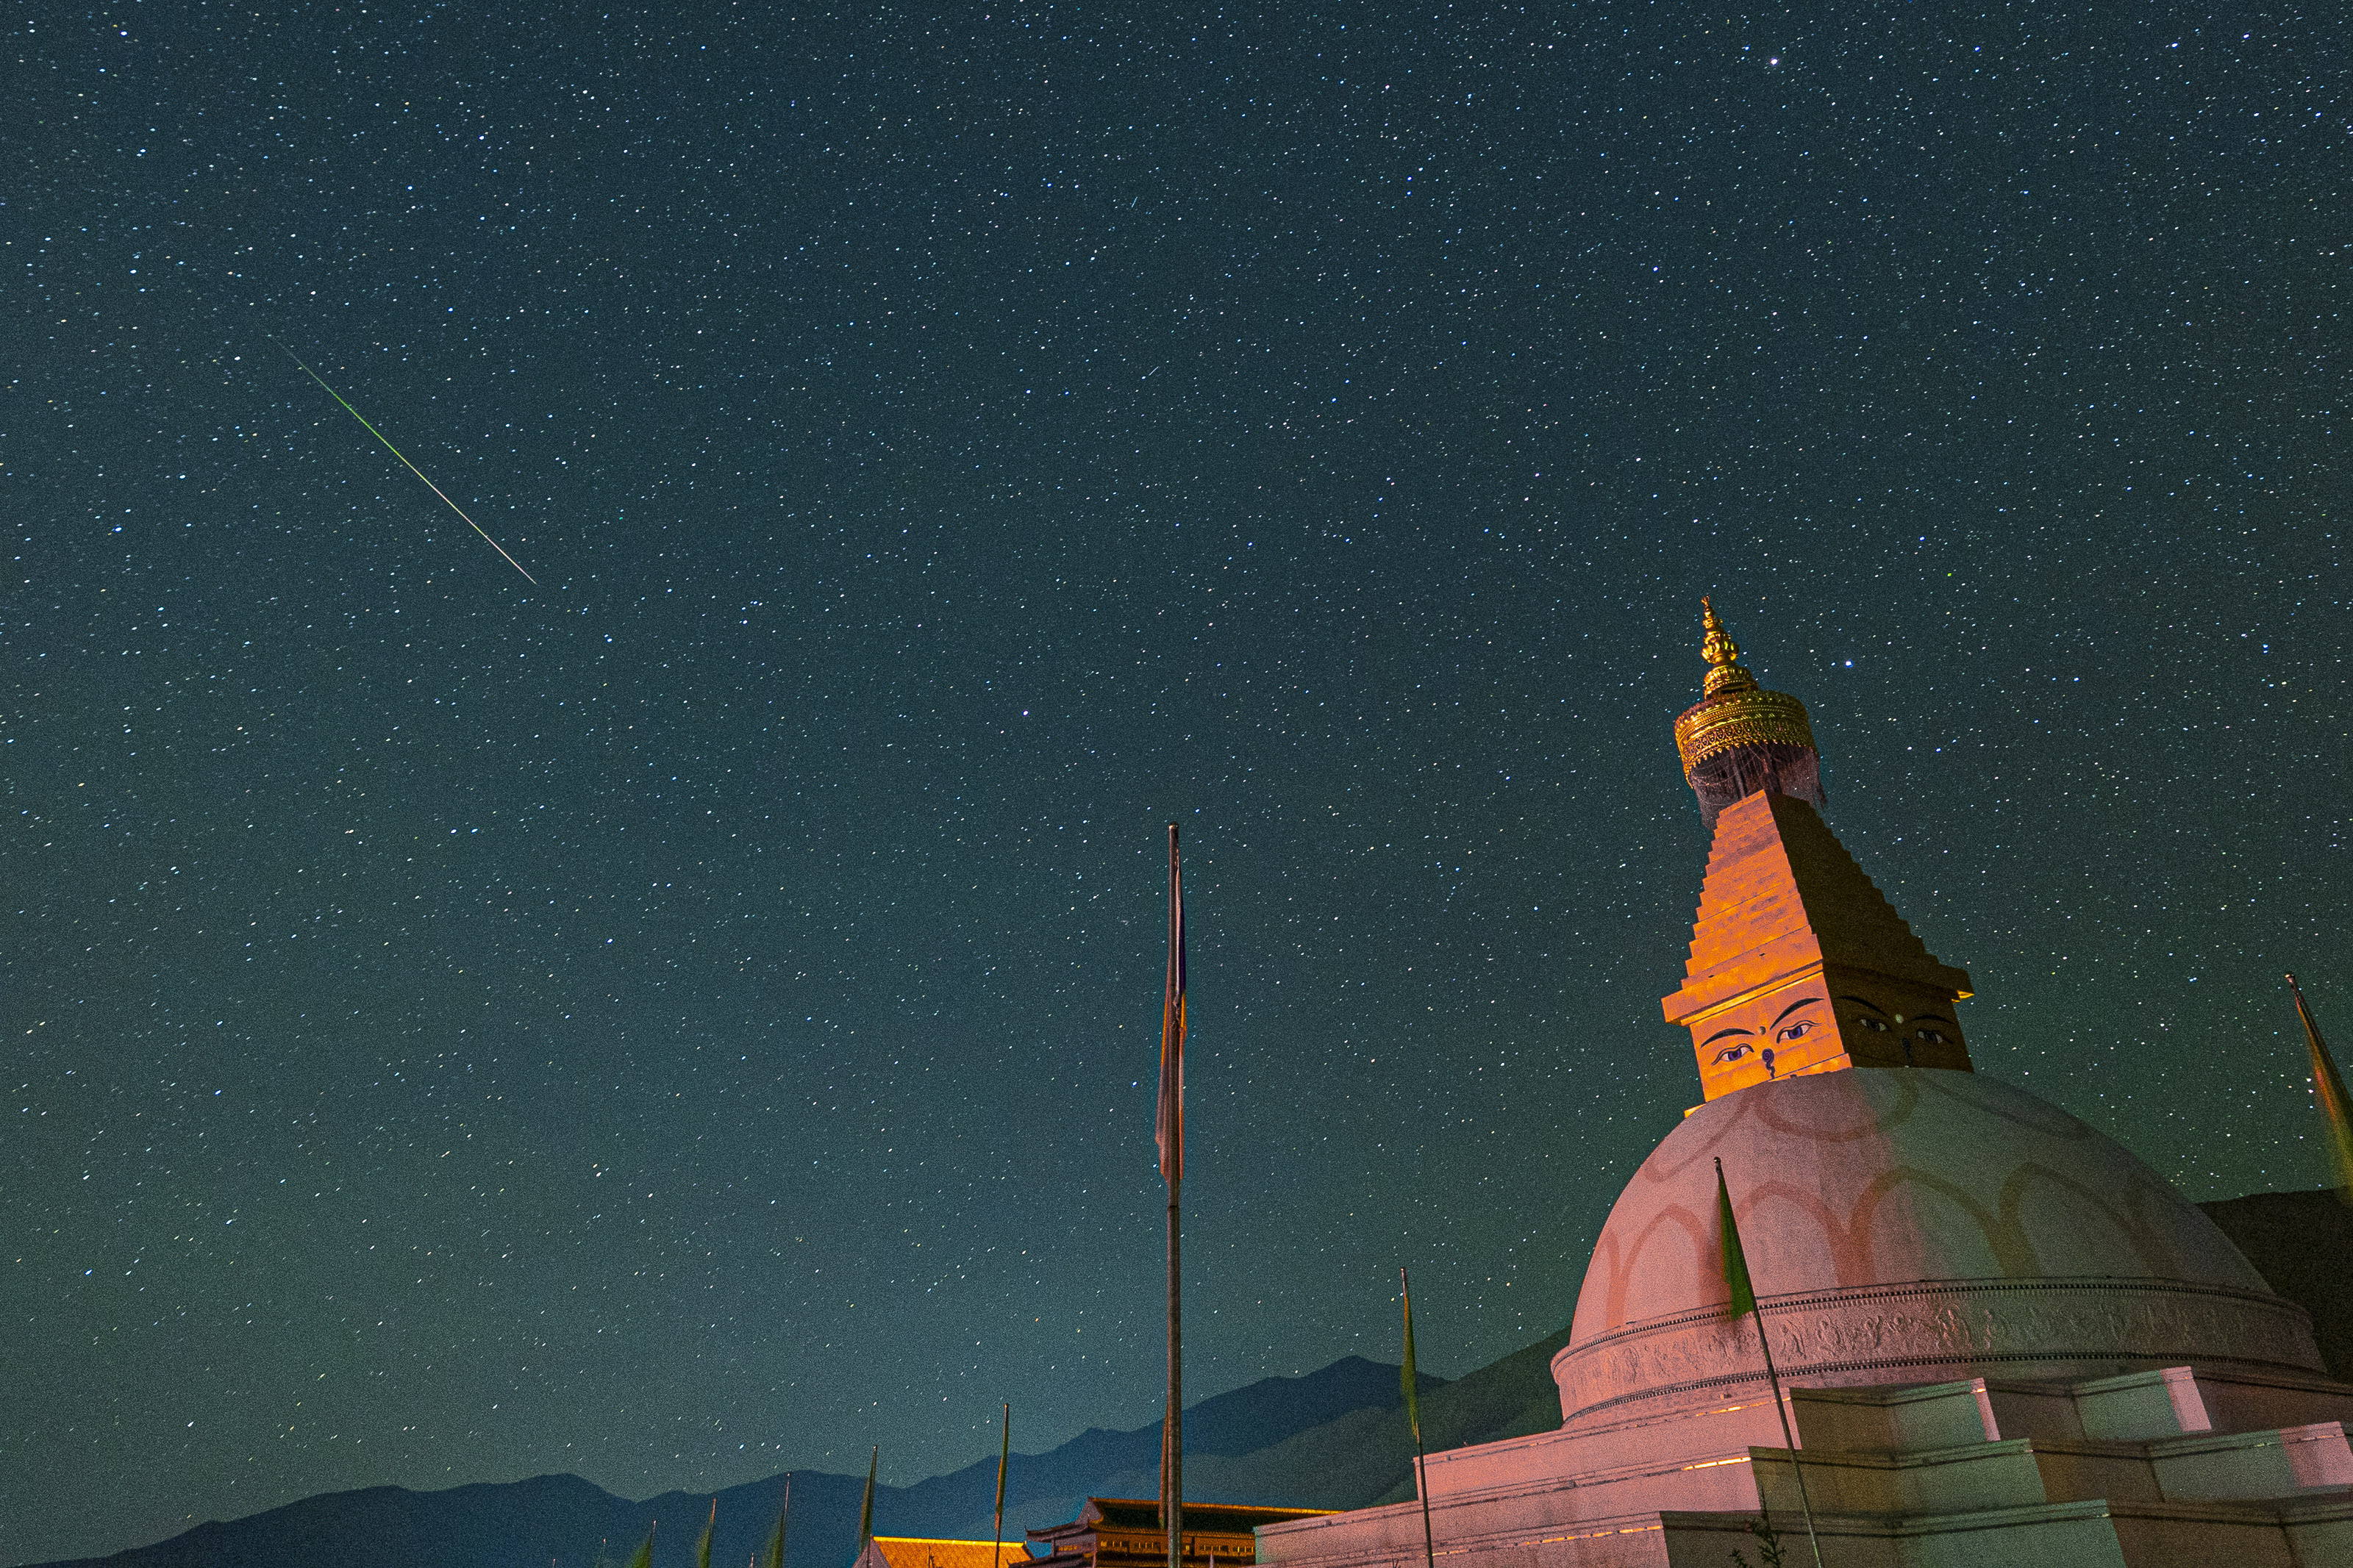 Sebuah meteor Perside melesat melintasi langit di atas sebuah bangunan besar berkubah.